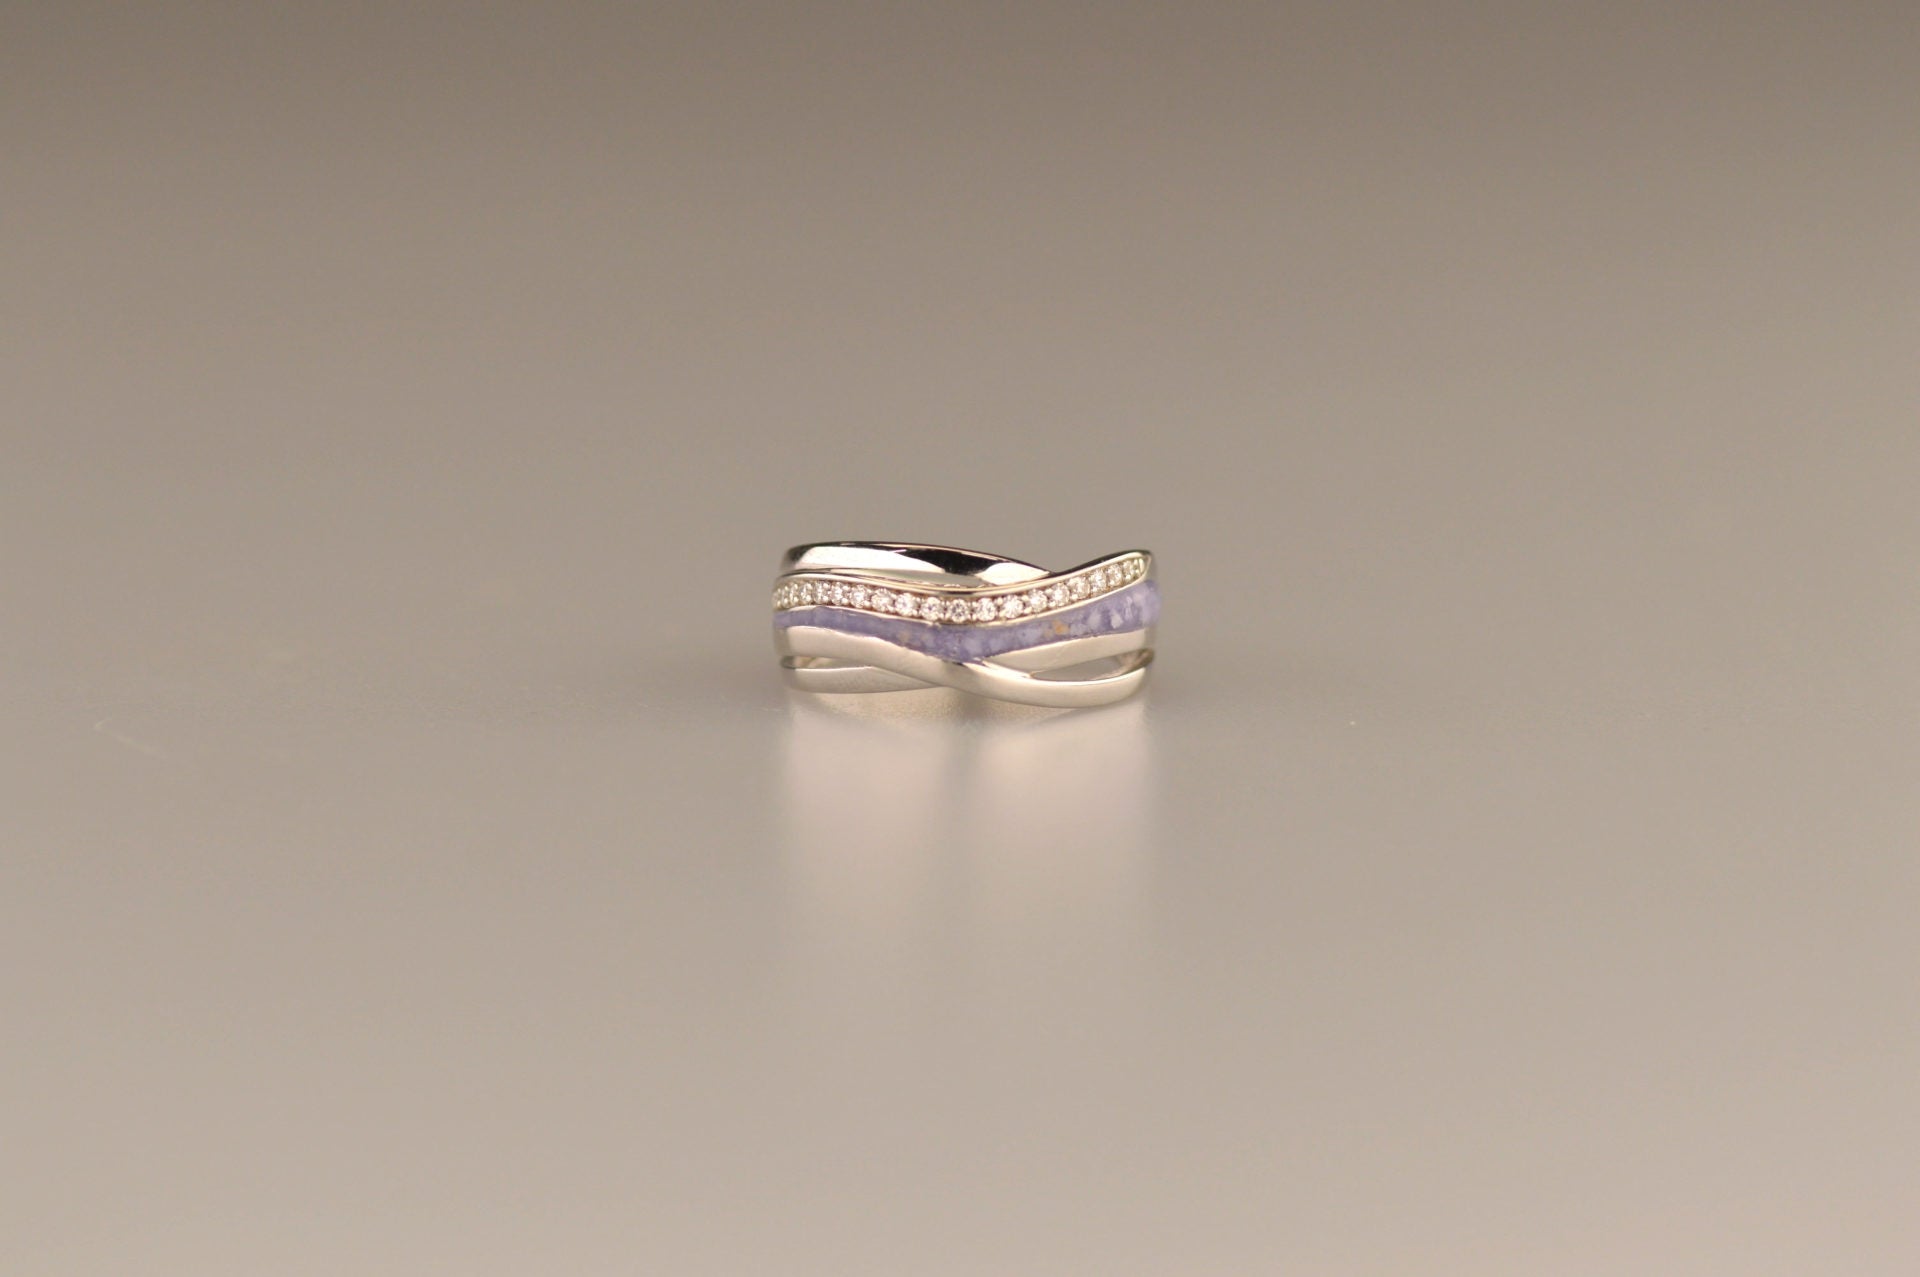 Gedenksieraad, creatieve ring 8 mm waar aan de bovenzijde zichtbaar as of haar verwerkt wordt in een deel van de ringband, een andere band is gezet met zirkonia's of diamanten naar keuze.  De asring is leverbaar in zilver en in 14 en 18 KT geelgoud/witgoud en roségoud.